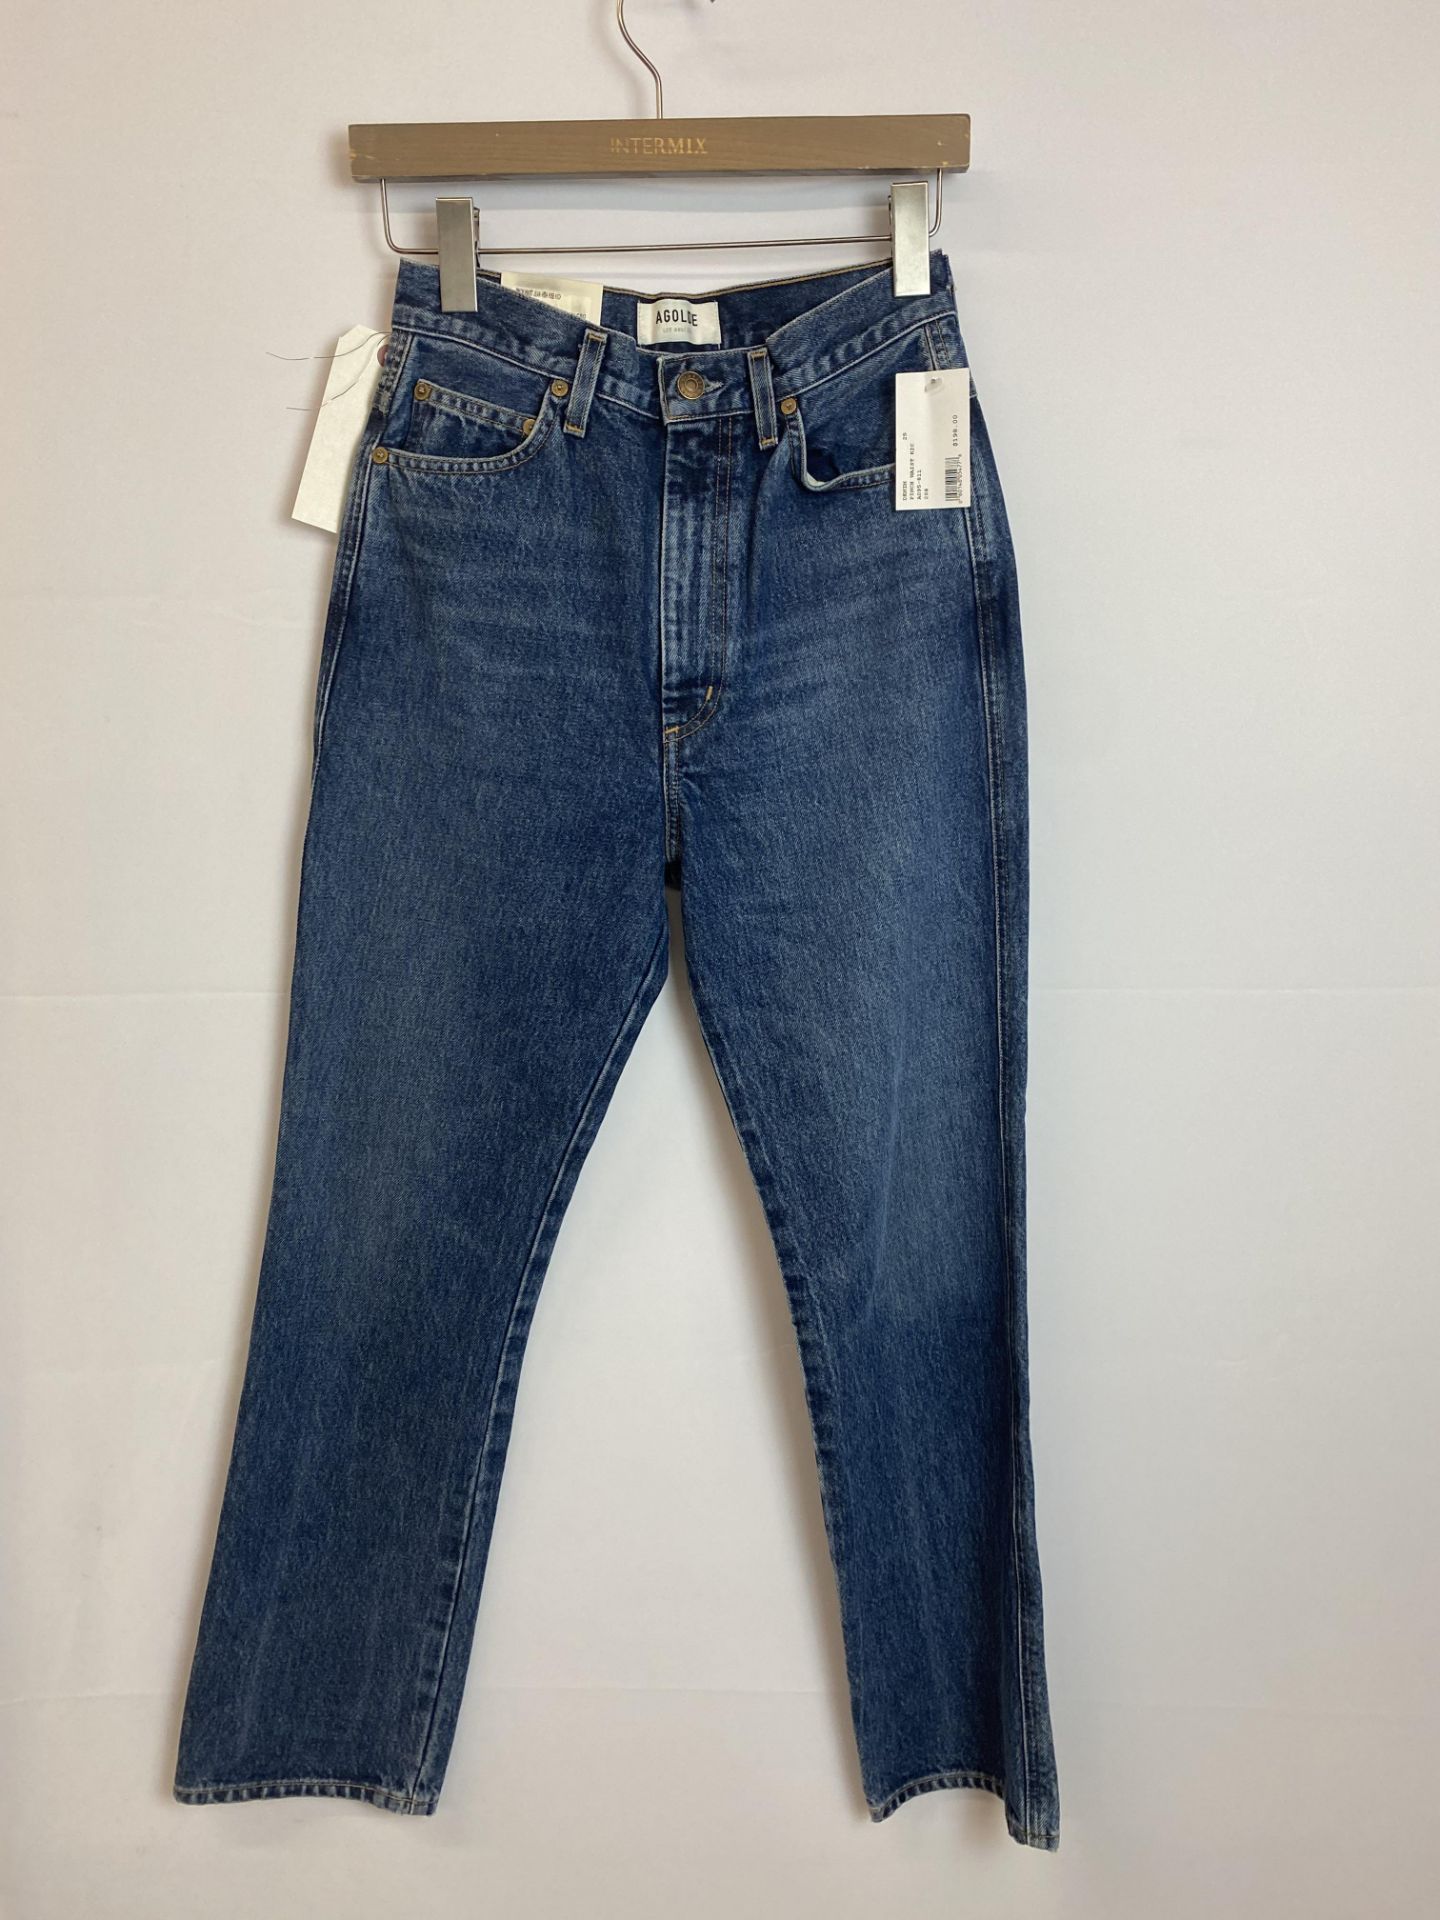 Agolde Pinch Waist High Rise Kick Denim Jean, Size: 25, Original Retail Price: $198 - Bild 2 aus 4